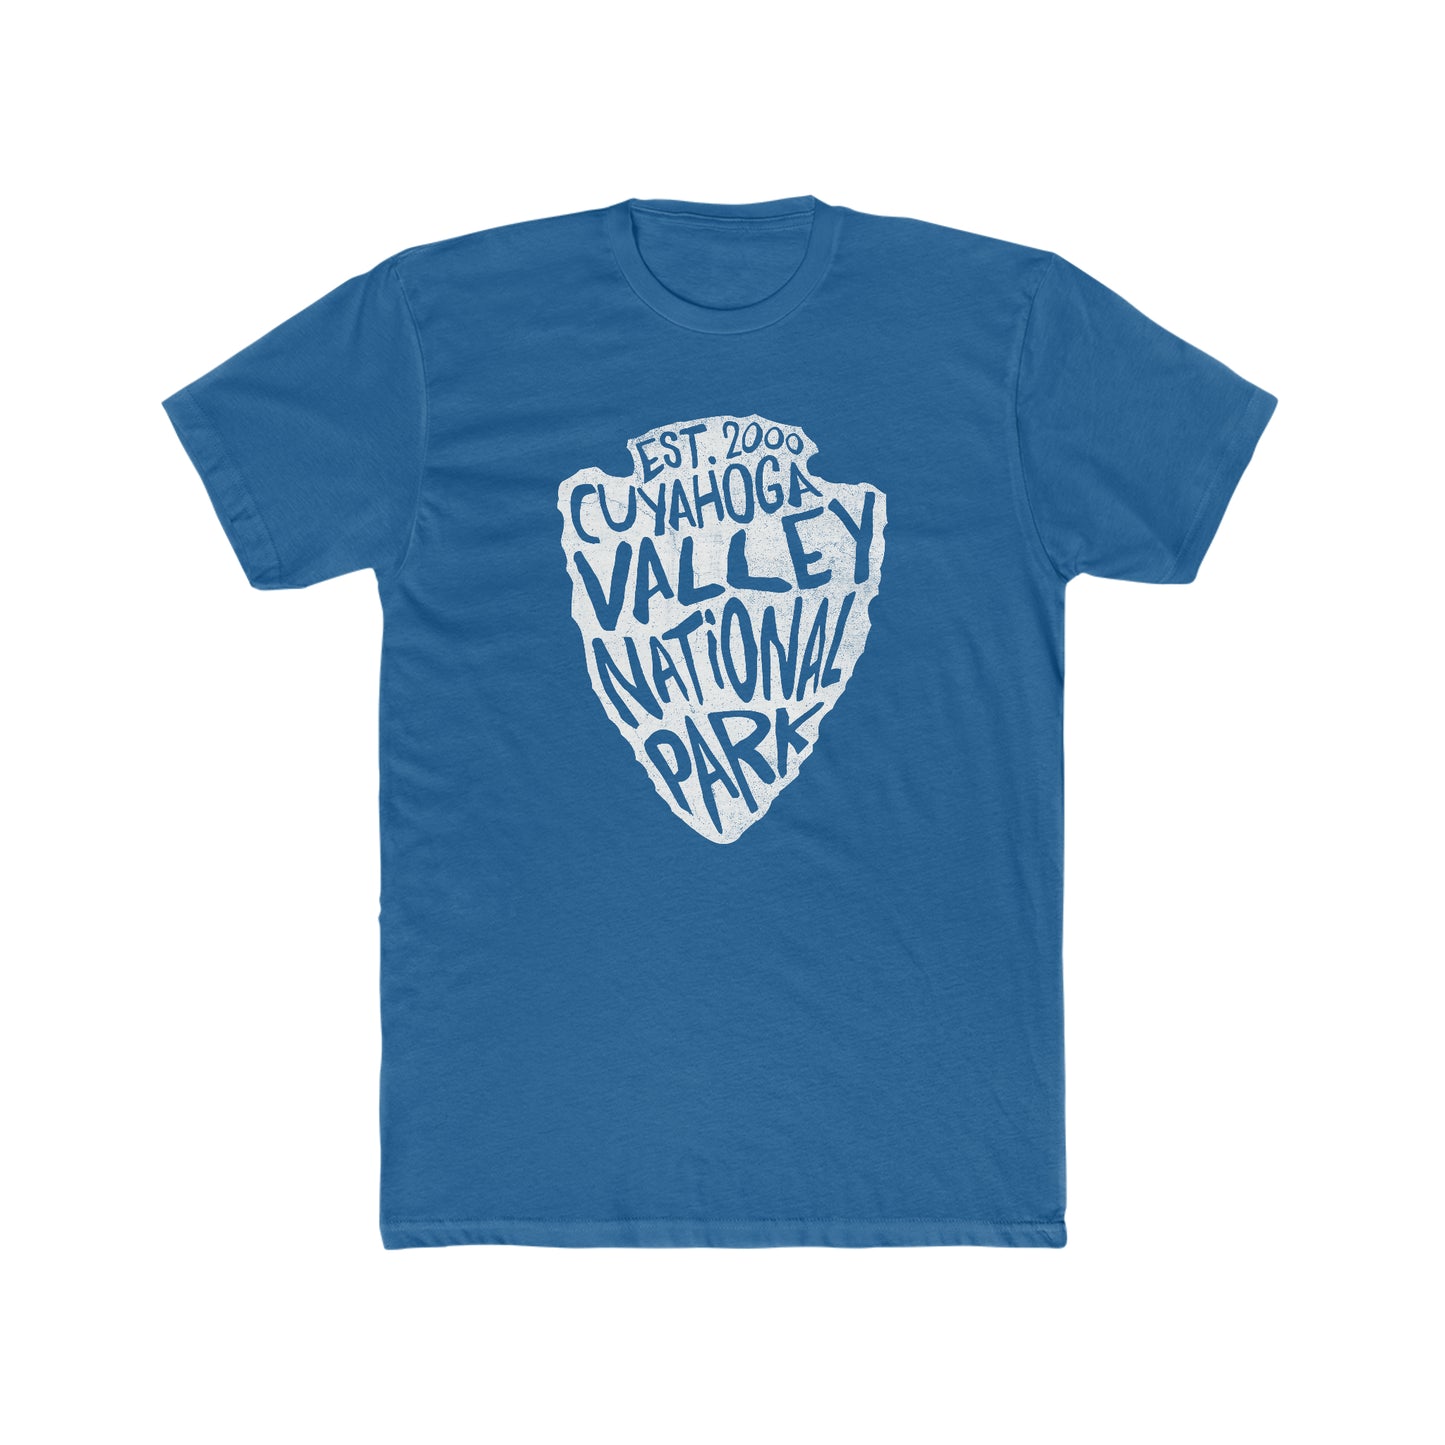 Cuyahoga Valley National Park T-Shirt - Arrowhead Design